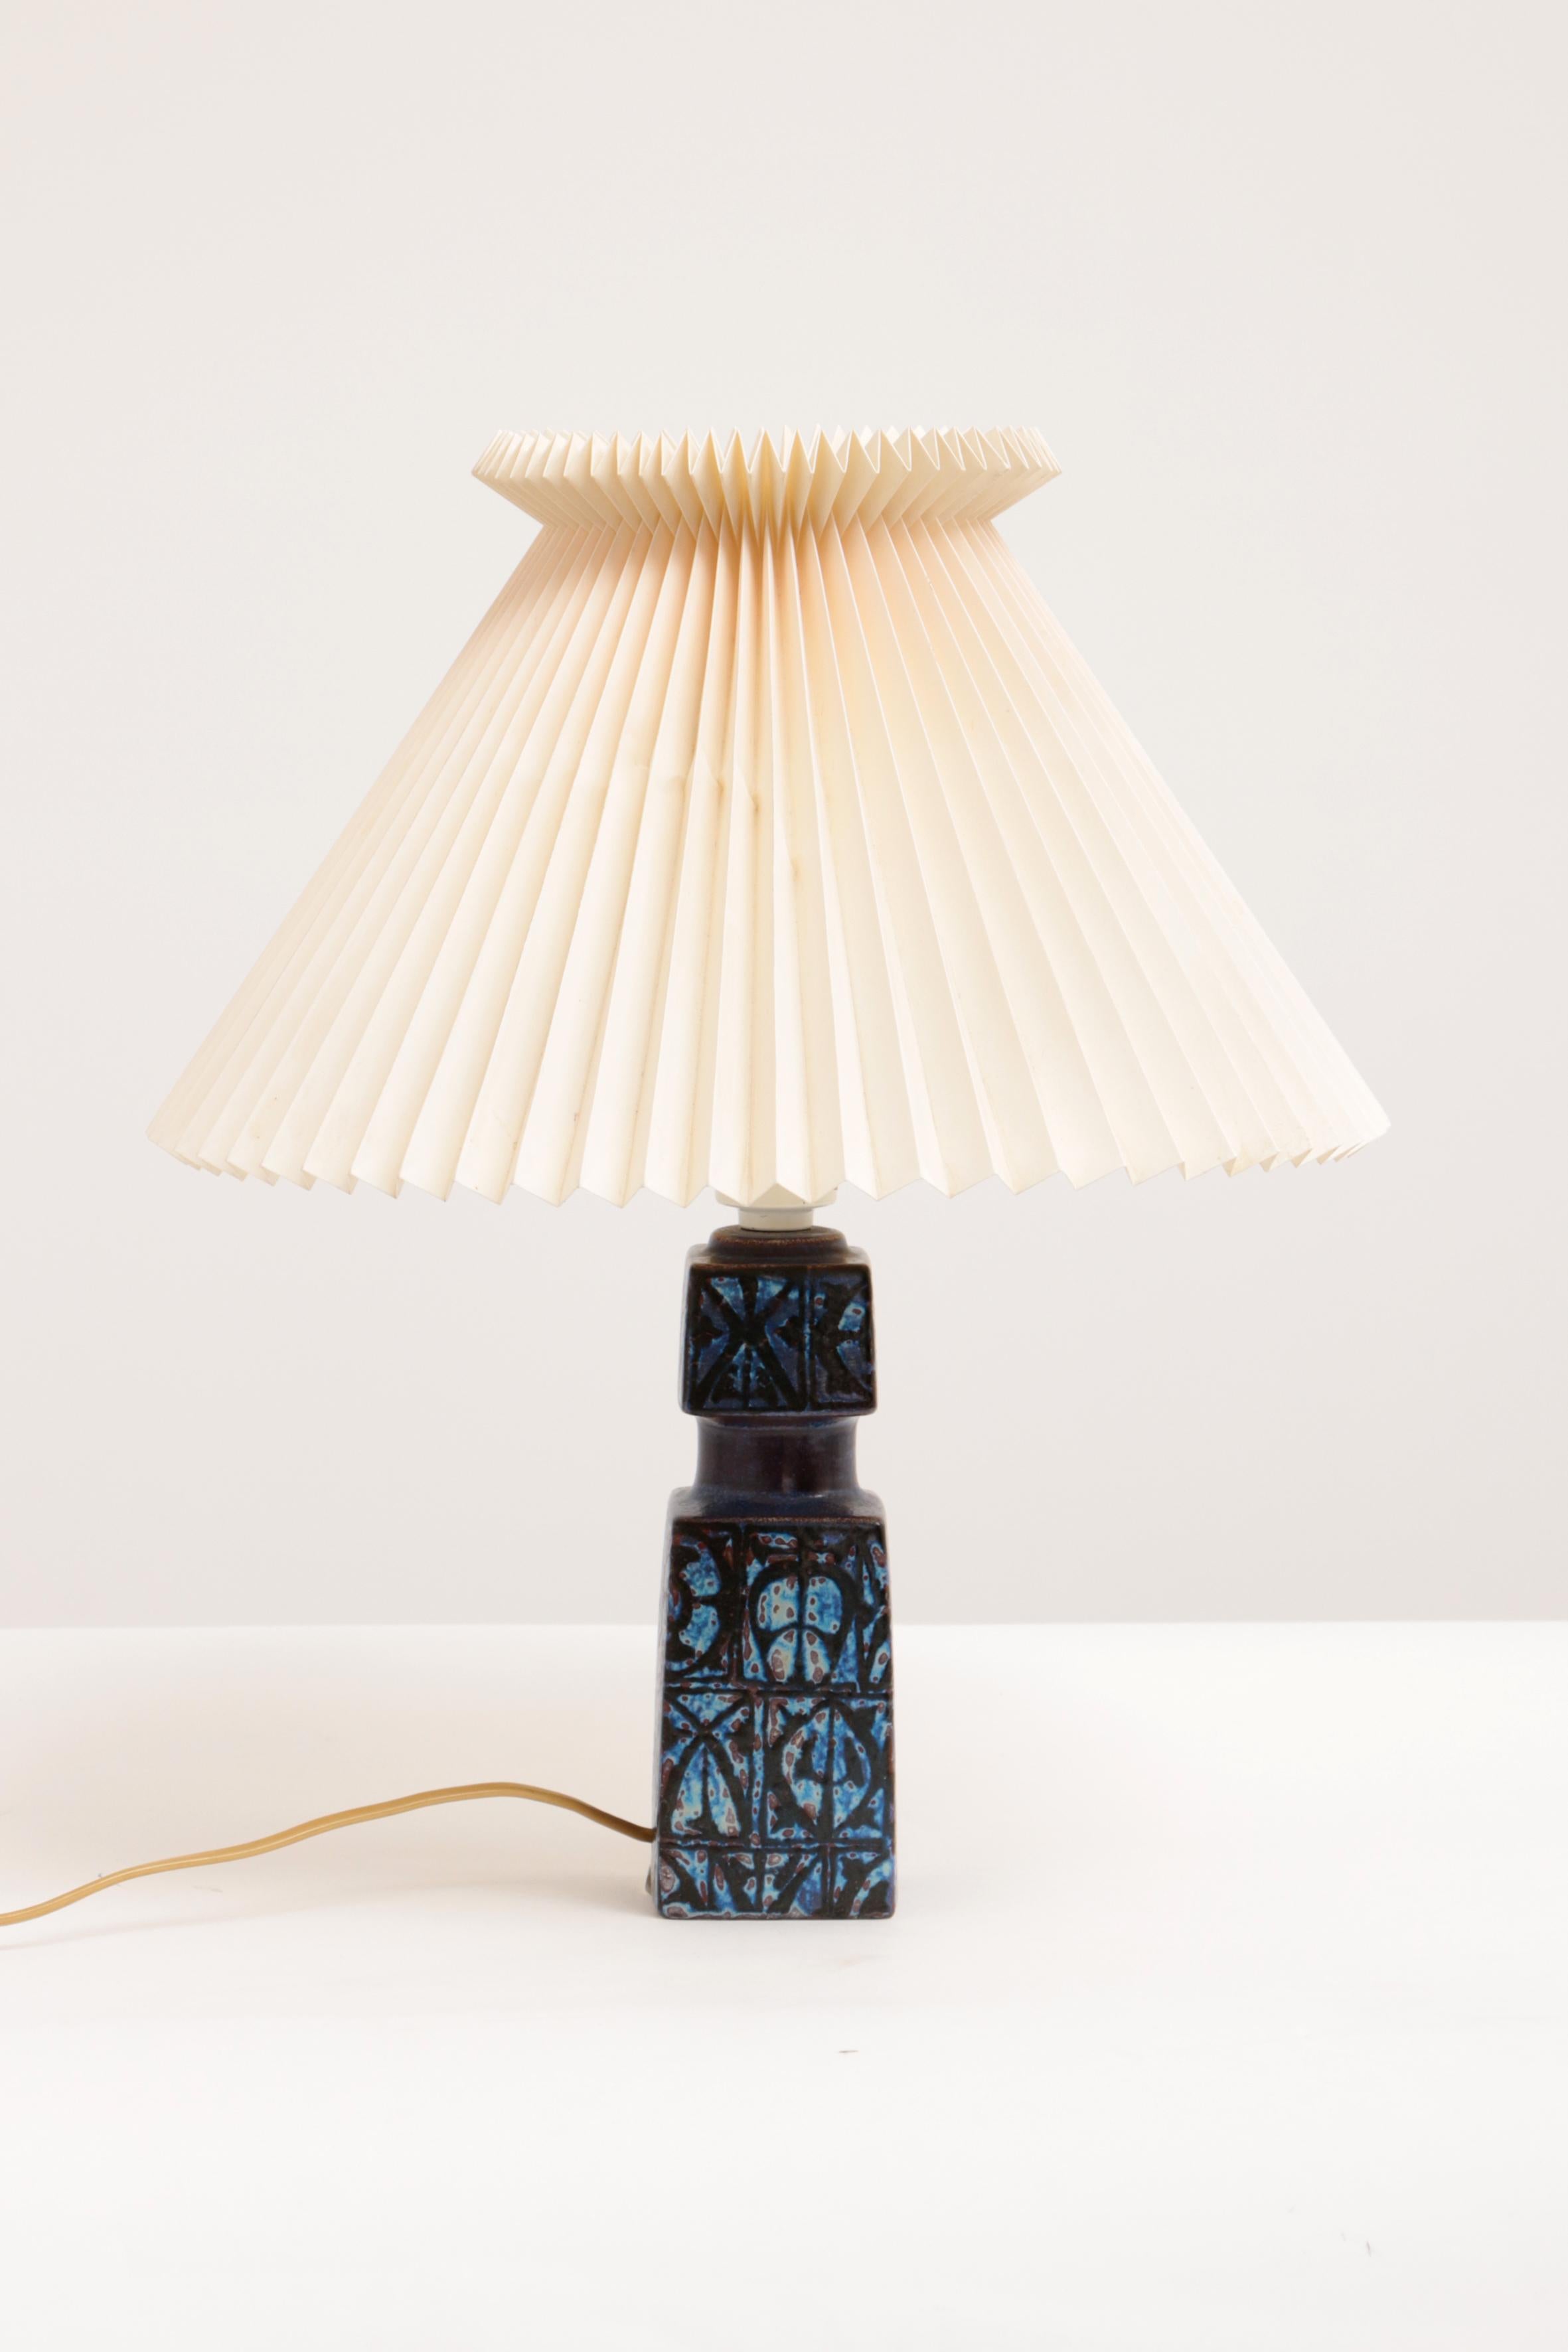 Blue Nils Thorsson Table Lamp for Royal Copenhagen/Fog & Mørup, 1970s For Sale 3